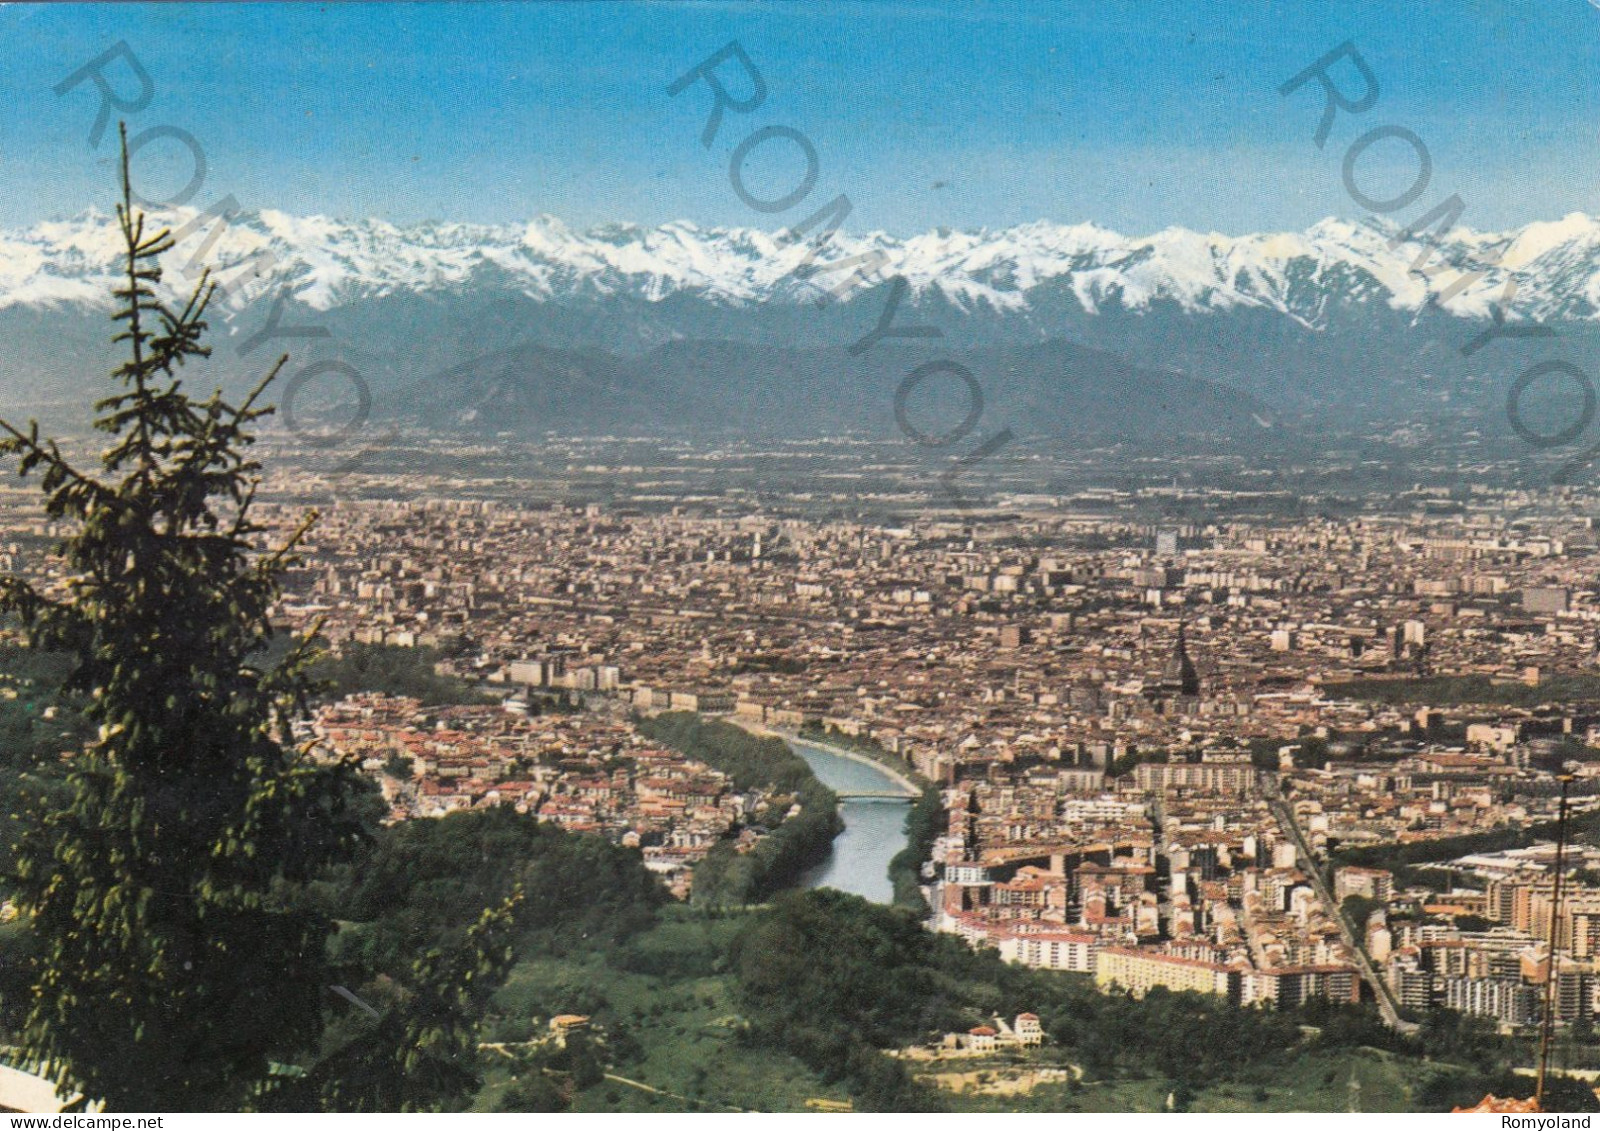 CARTOLINA  B15 TORINO,PIEMONTE-PANORAMA-STORIA,CULTURA,MEMORIA,RELIGIONE,IMPERO ROMANO,BELLA ITALIA,VIAGGIATA 1976 - Viste Panoramiche, Panorama